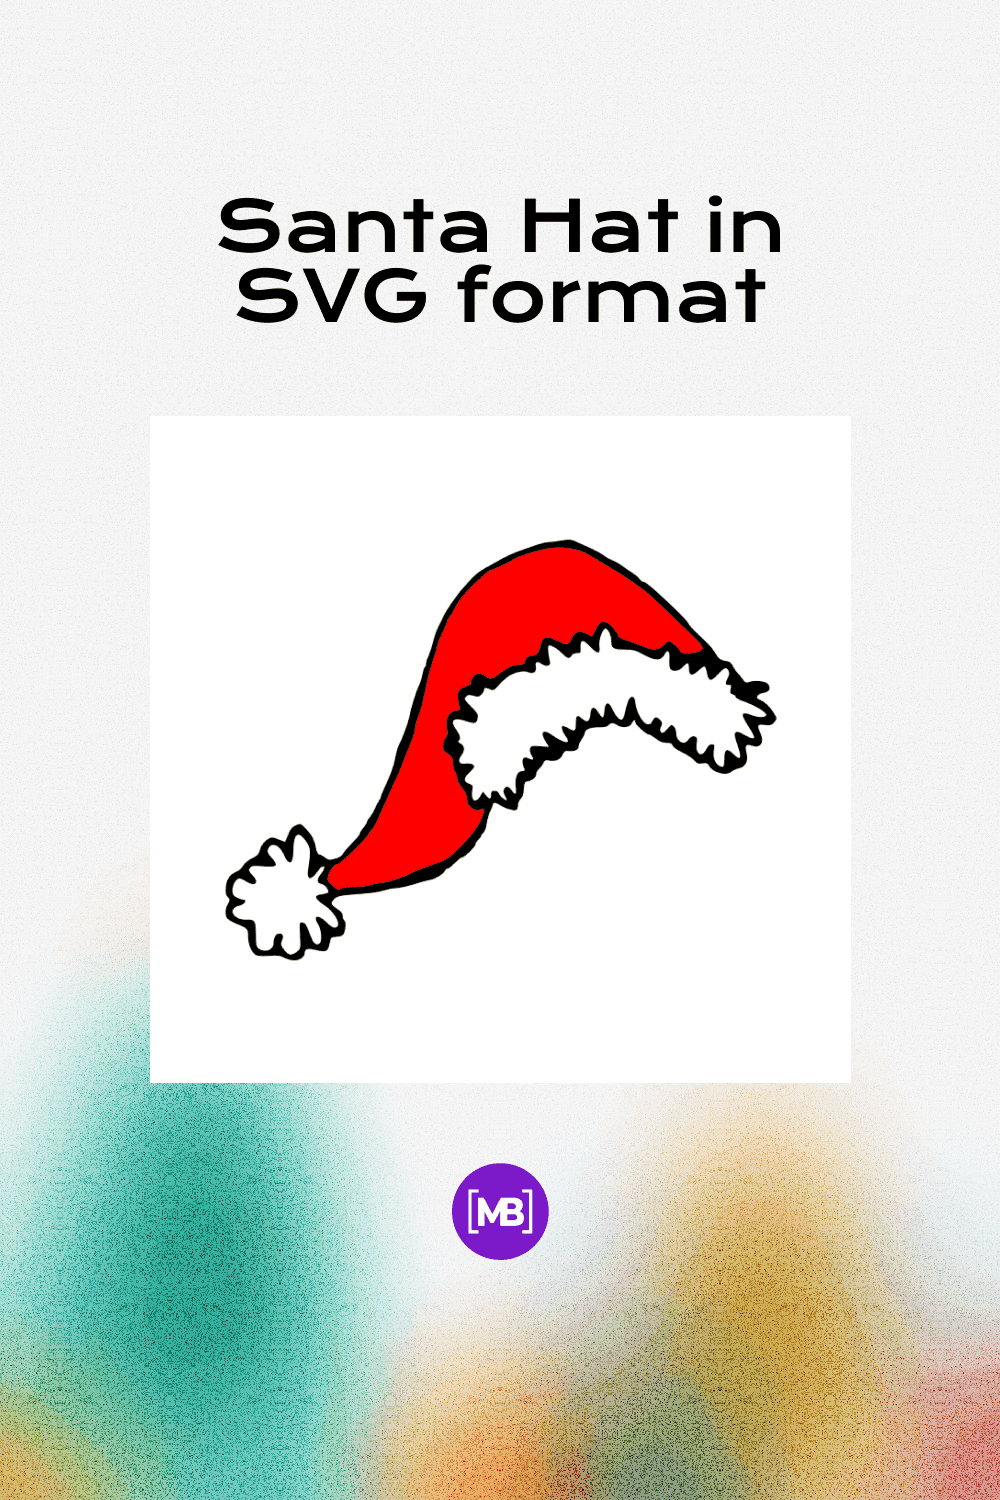 Santa Hat in SVG format.